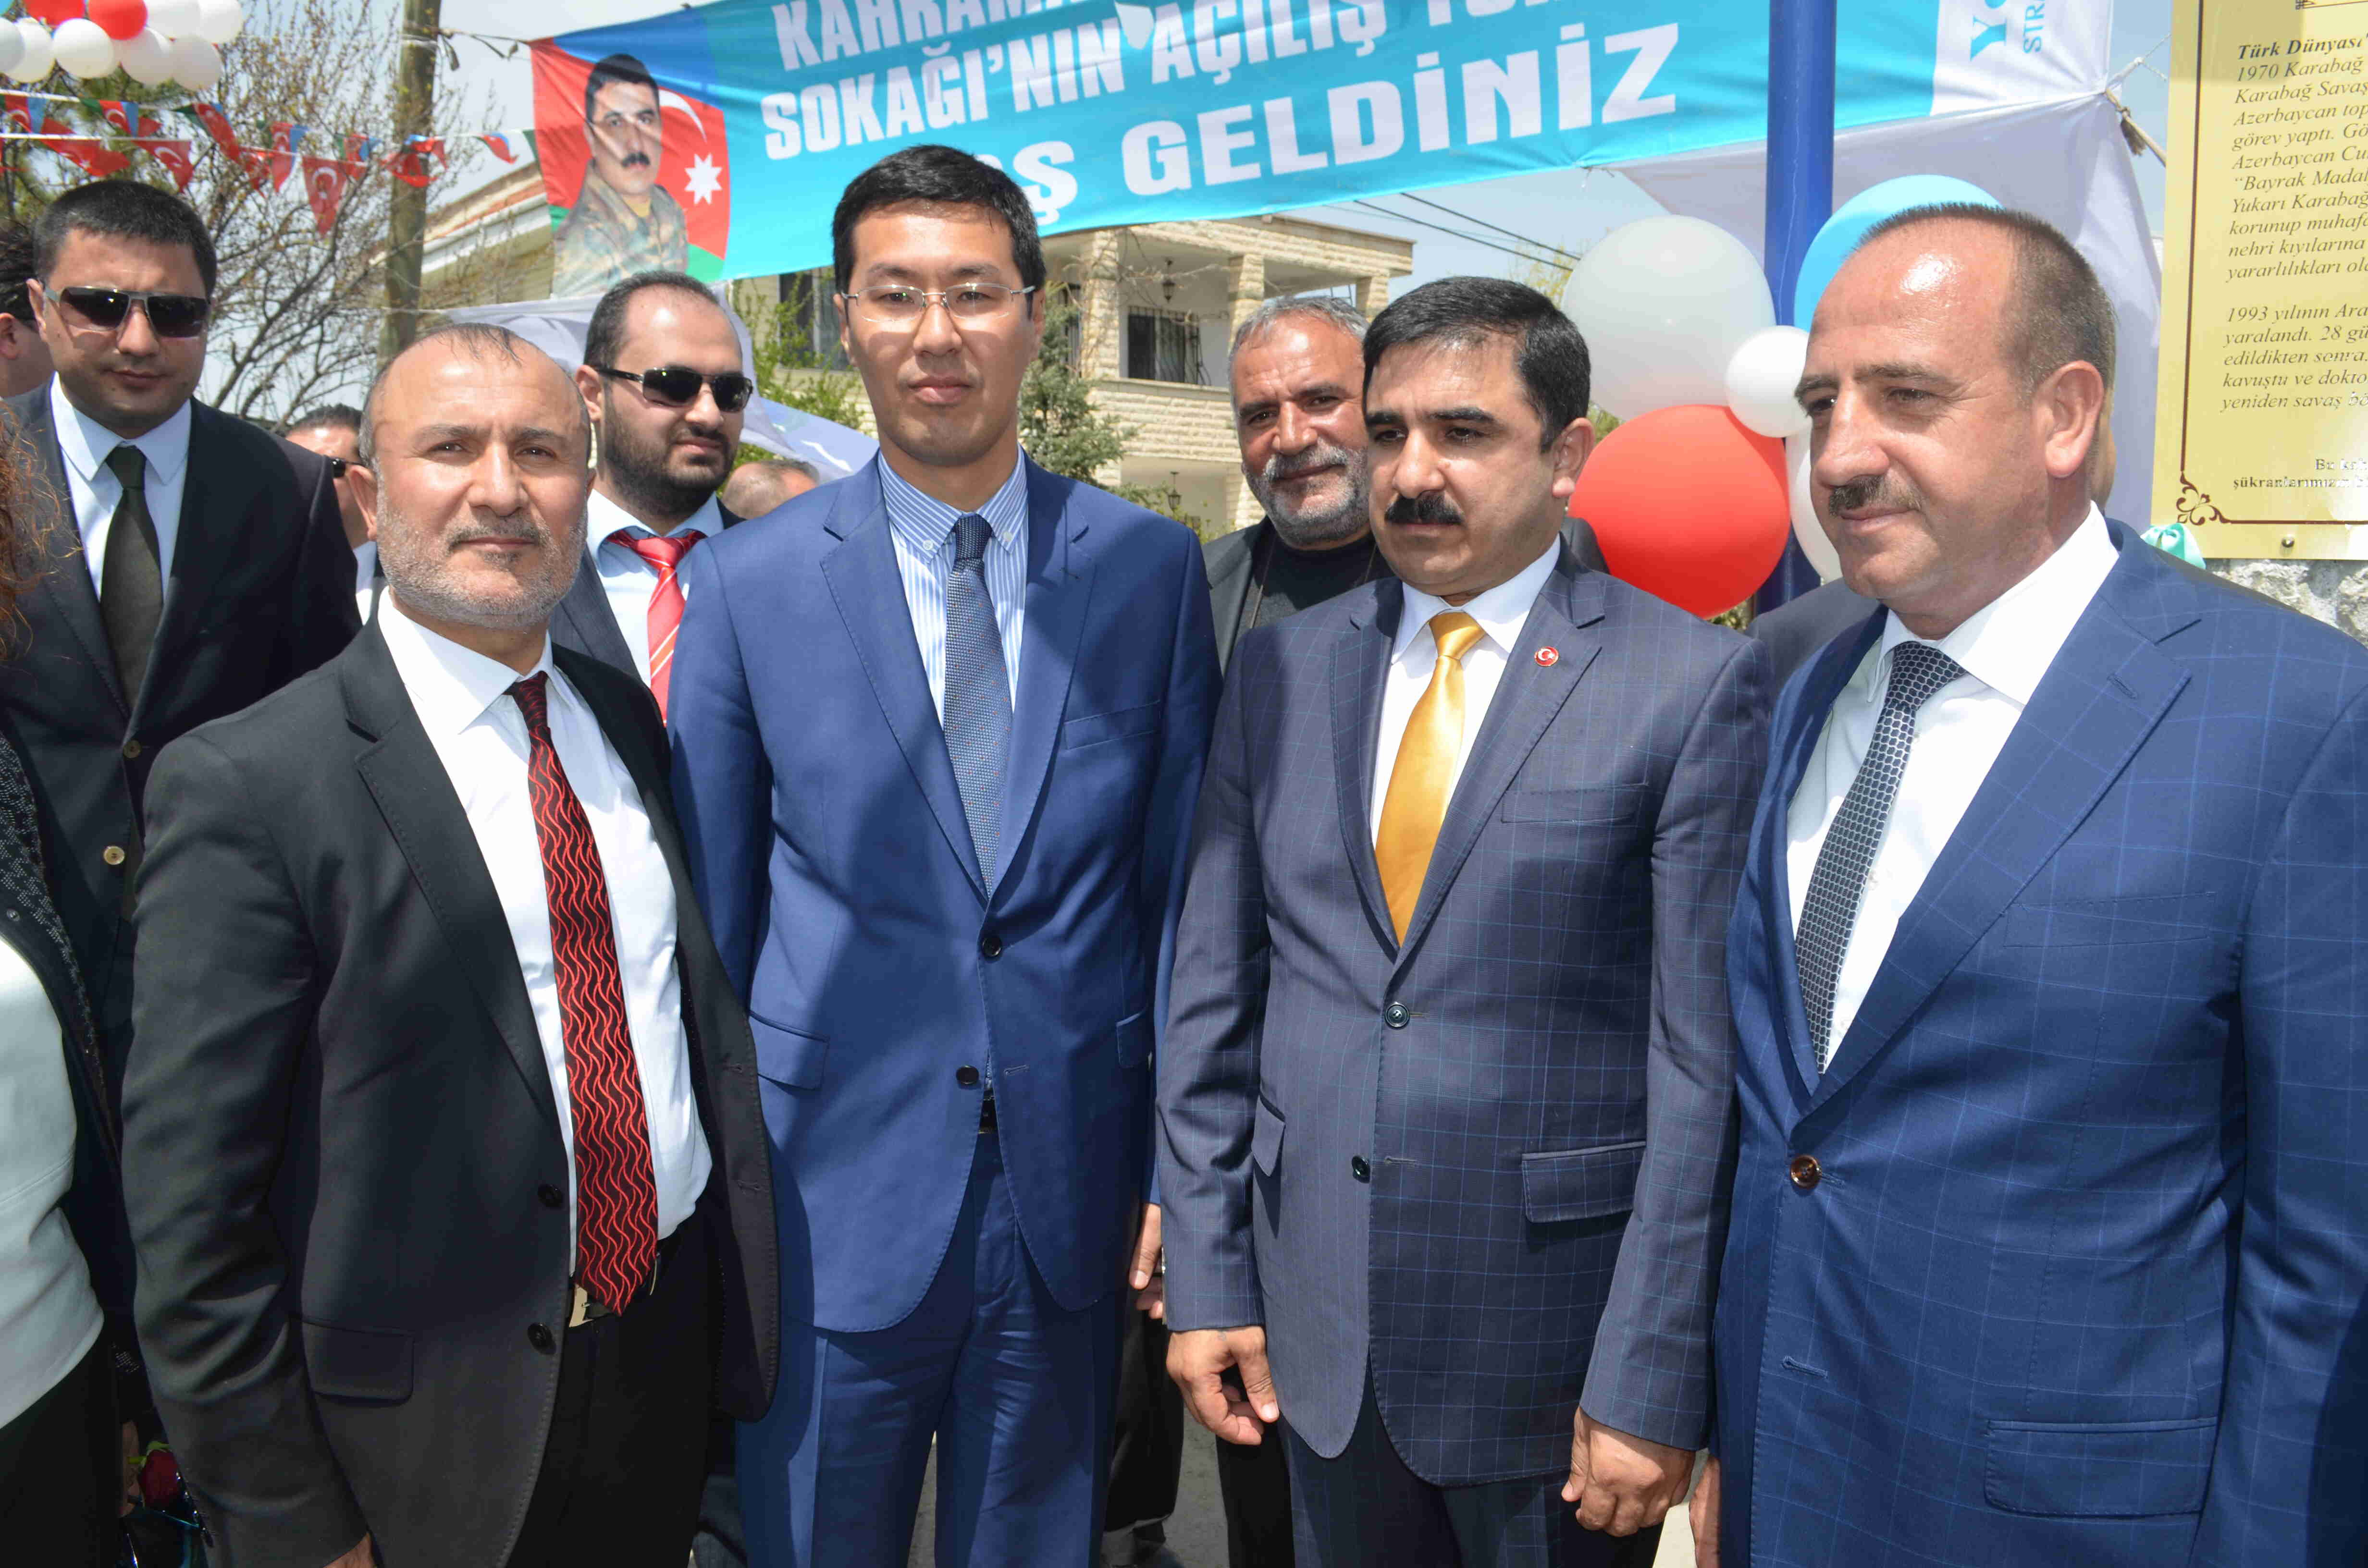 KARABAĞ Savaşı'nın gazisi, Milli Kahraman İBAD HÜSEYİNLİ'nin adı Ankara Gölbaşı'nda yaşatılacak...